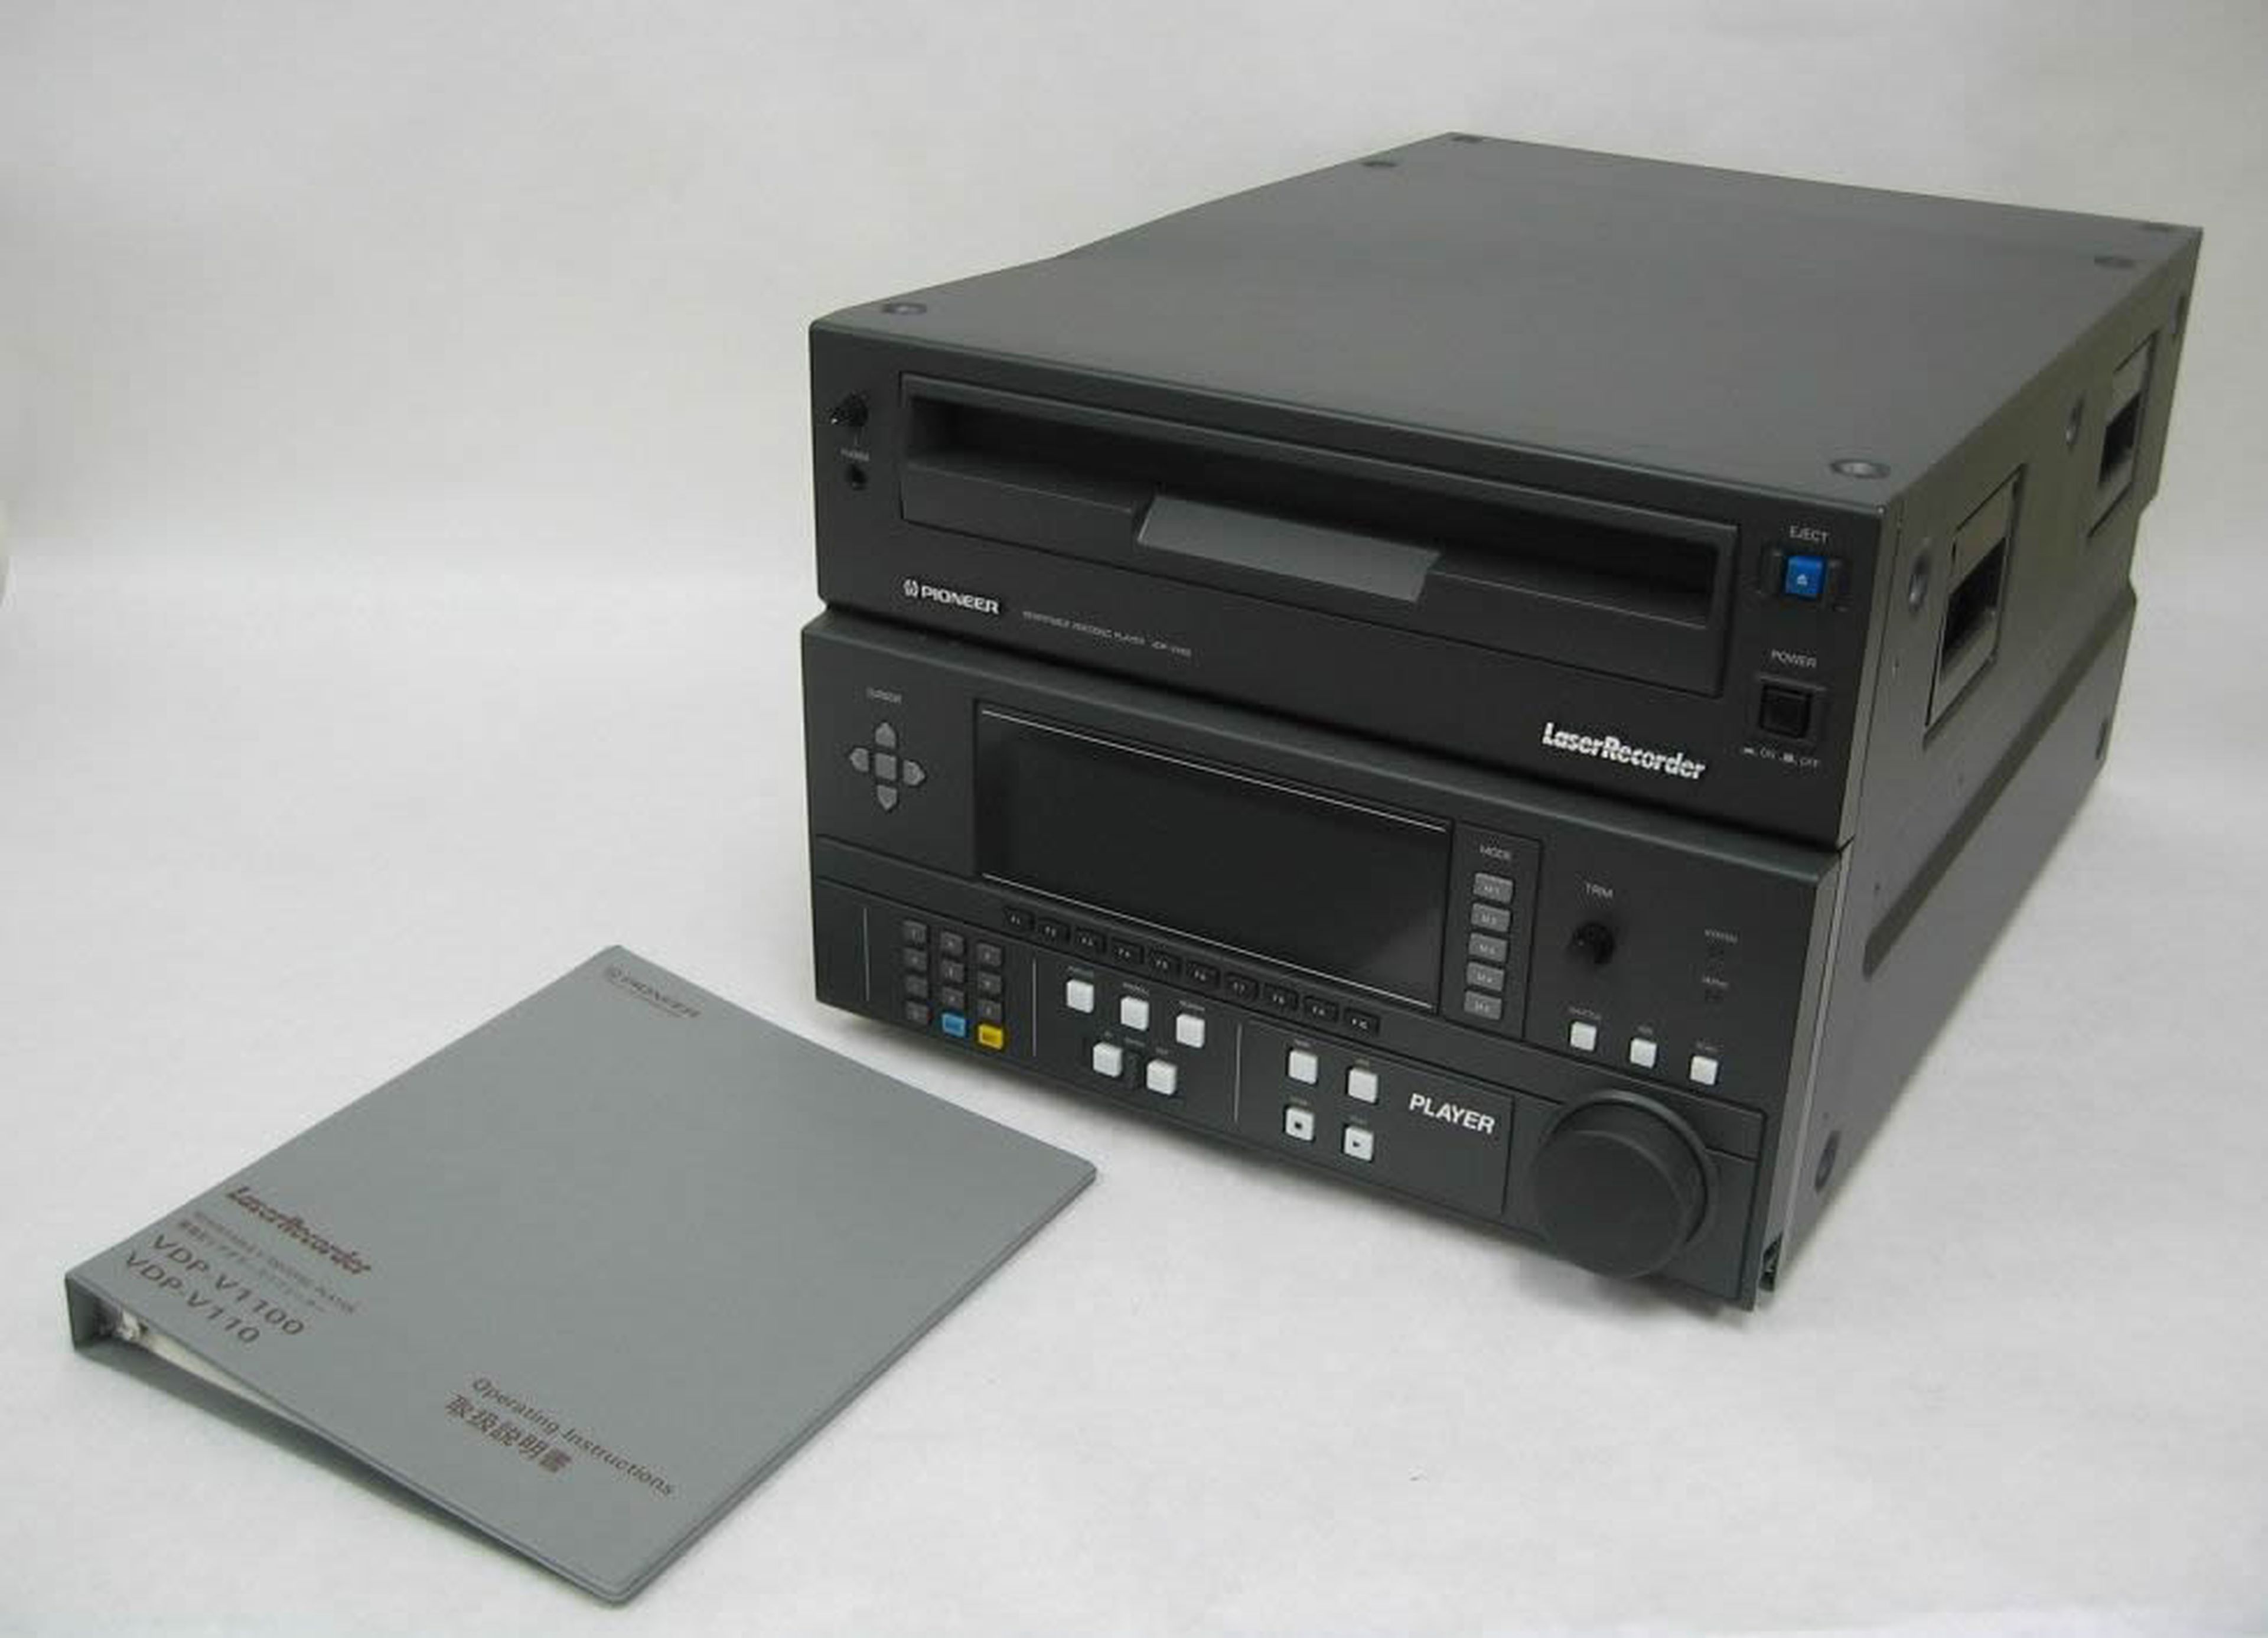 Un grabador Pioneer LaserRecorder que graba LaserDisc y puede conectarse a un ordenador.